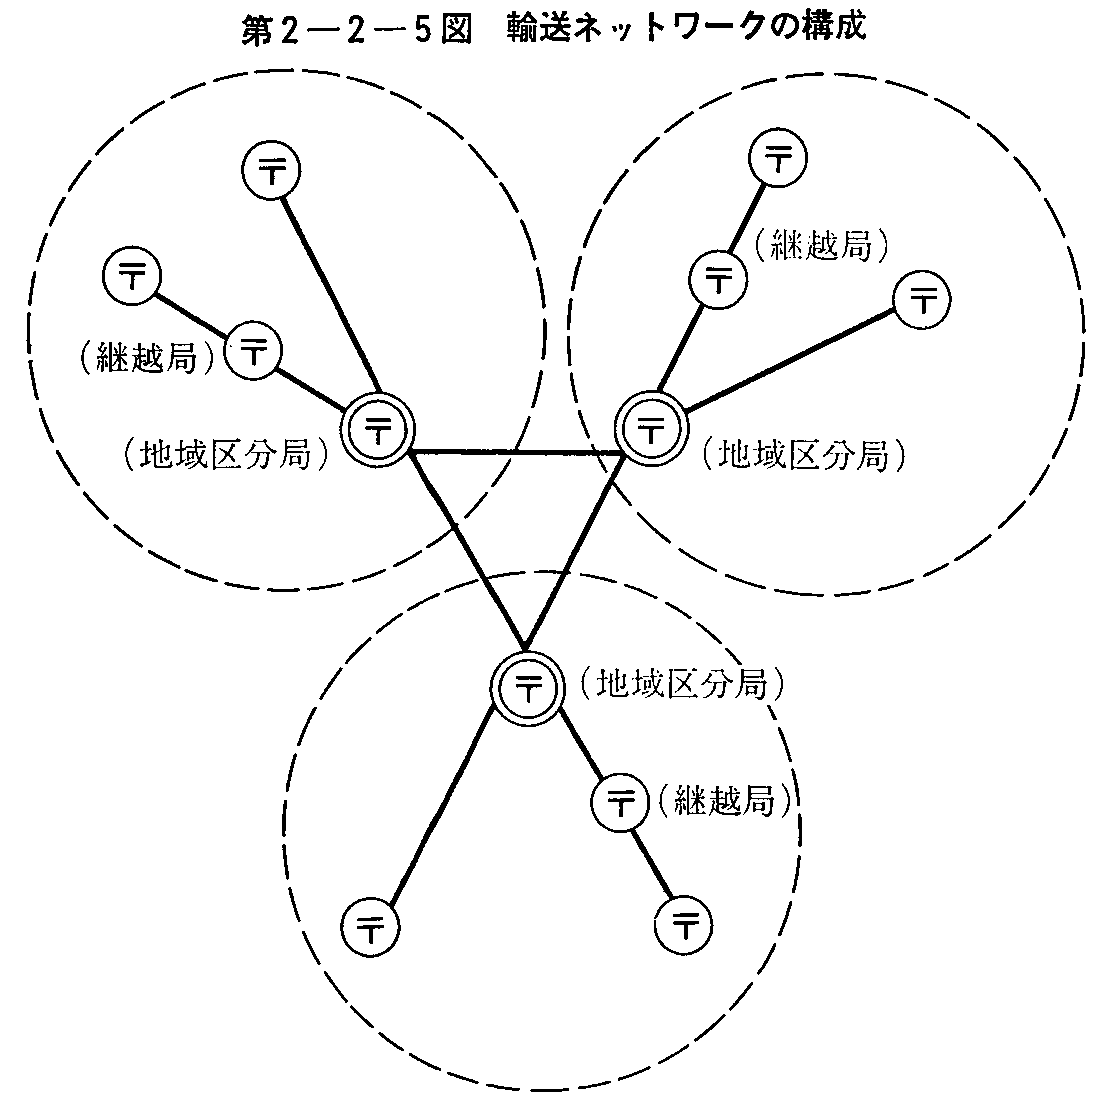 第2-2-5図 輸送ネットワークの構成